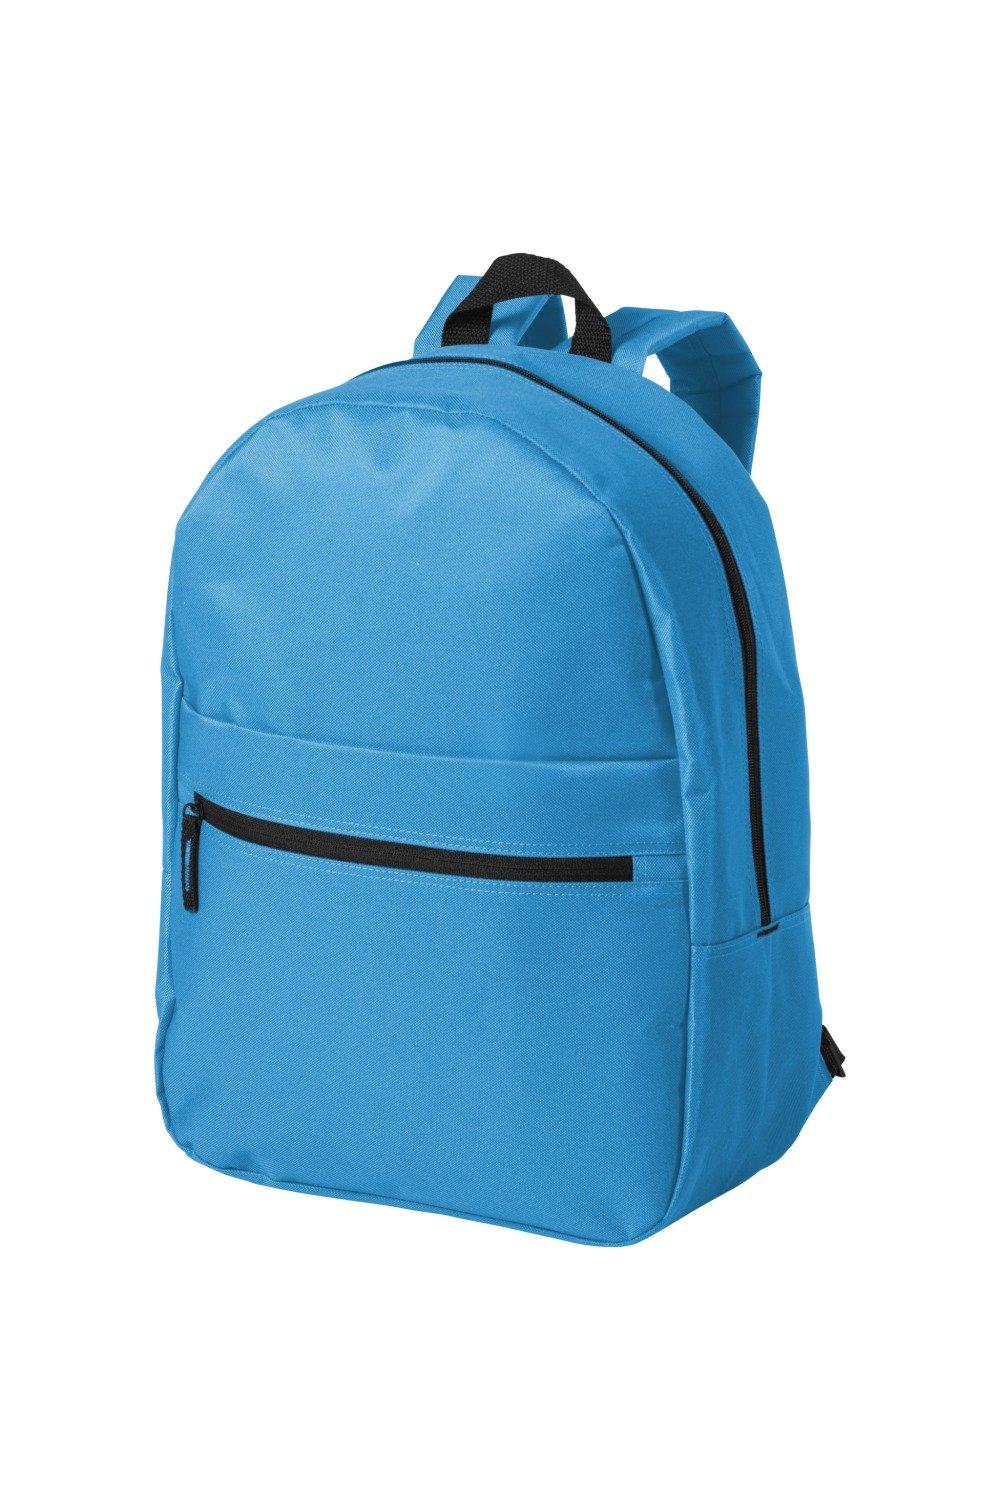 Ванкуверский рюкзак Bullet, синий рюкзак с карманом единорог